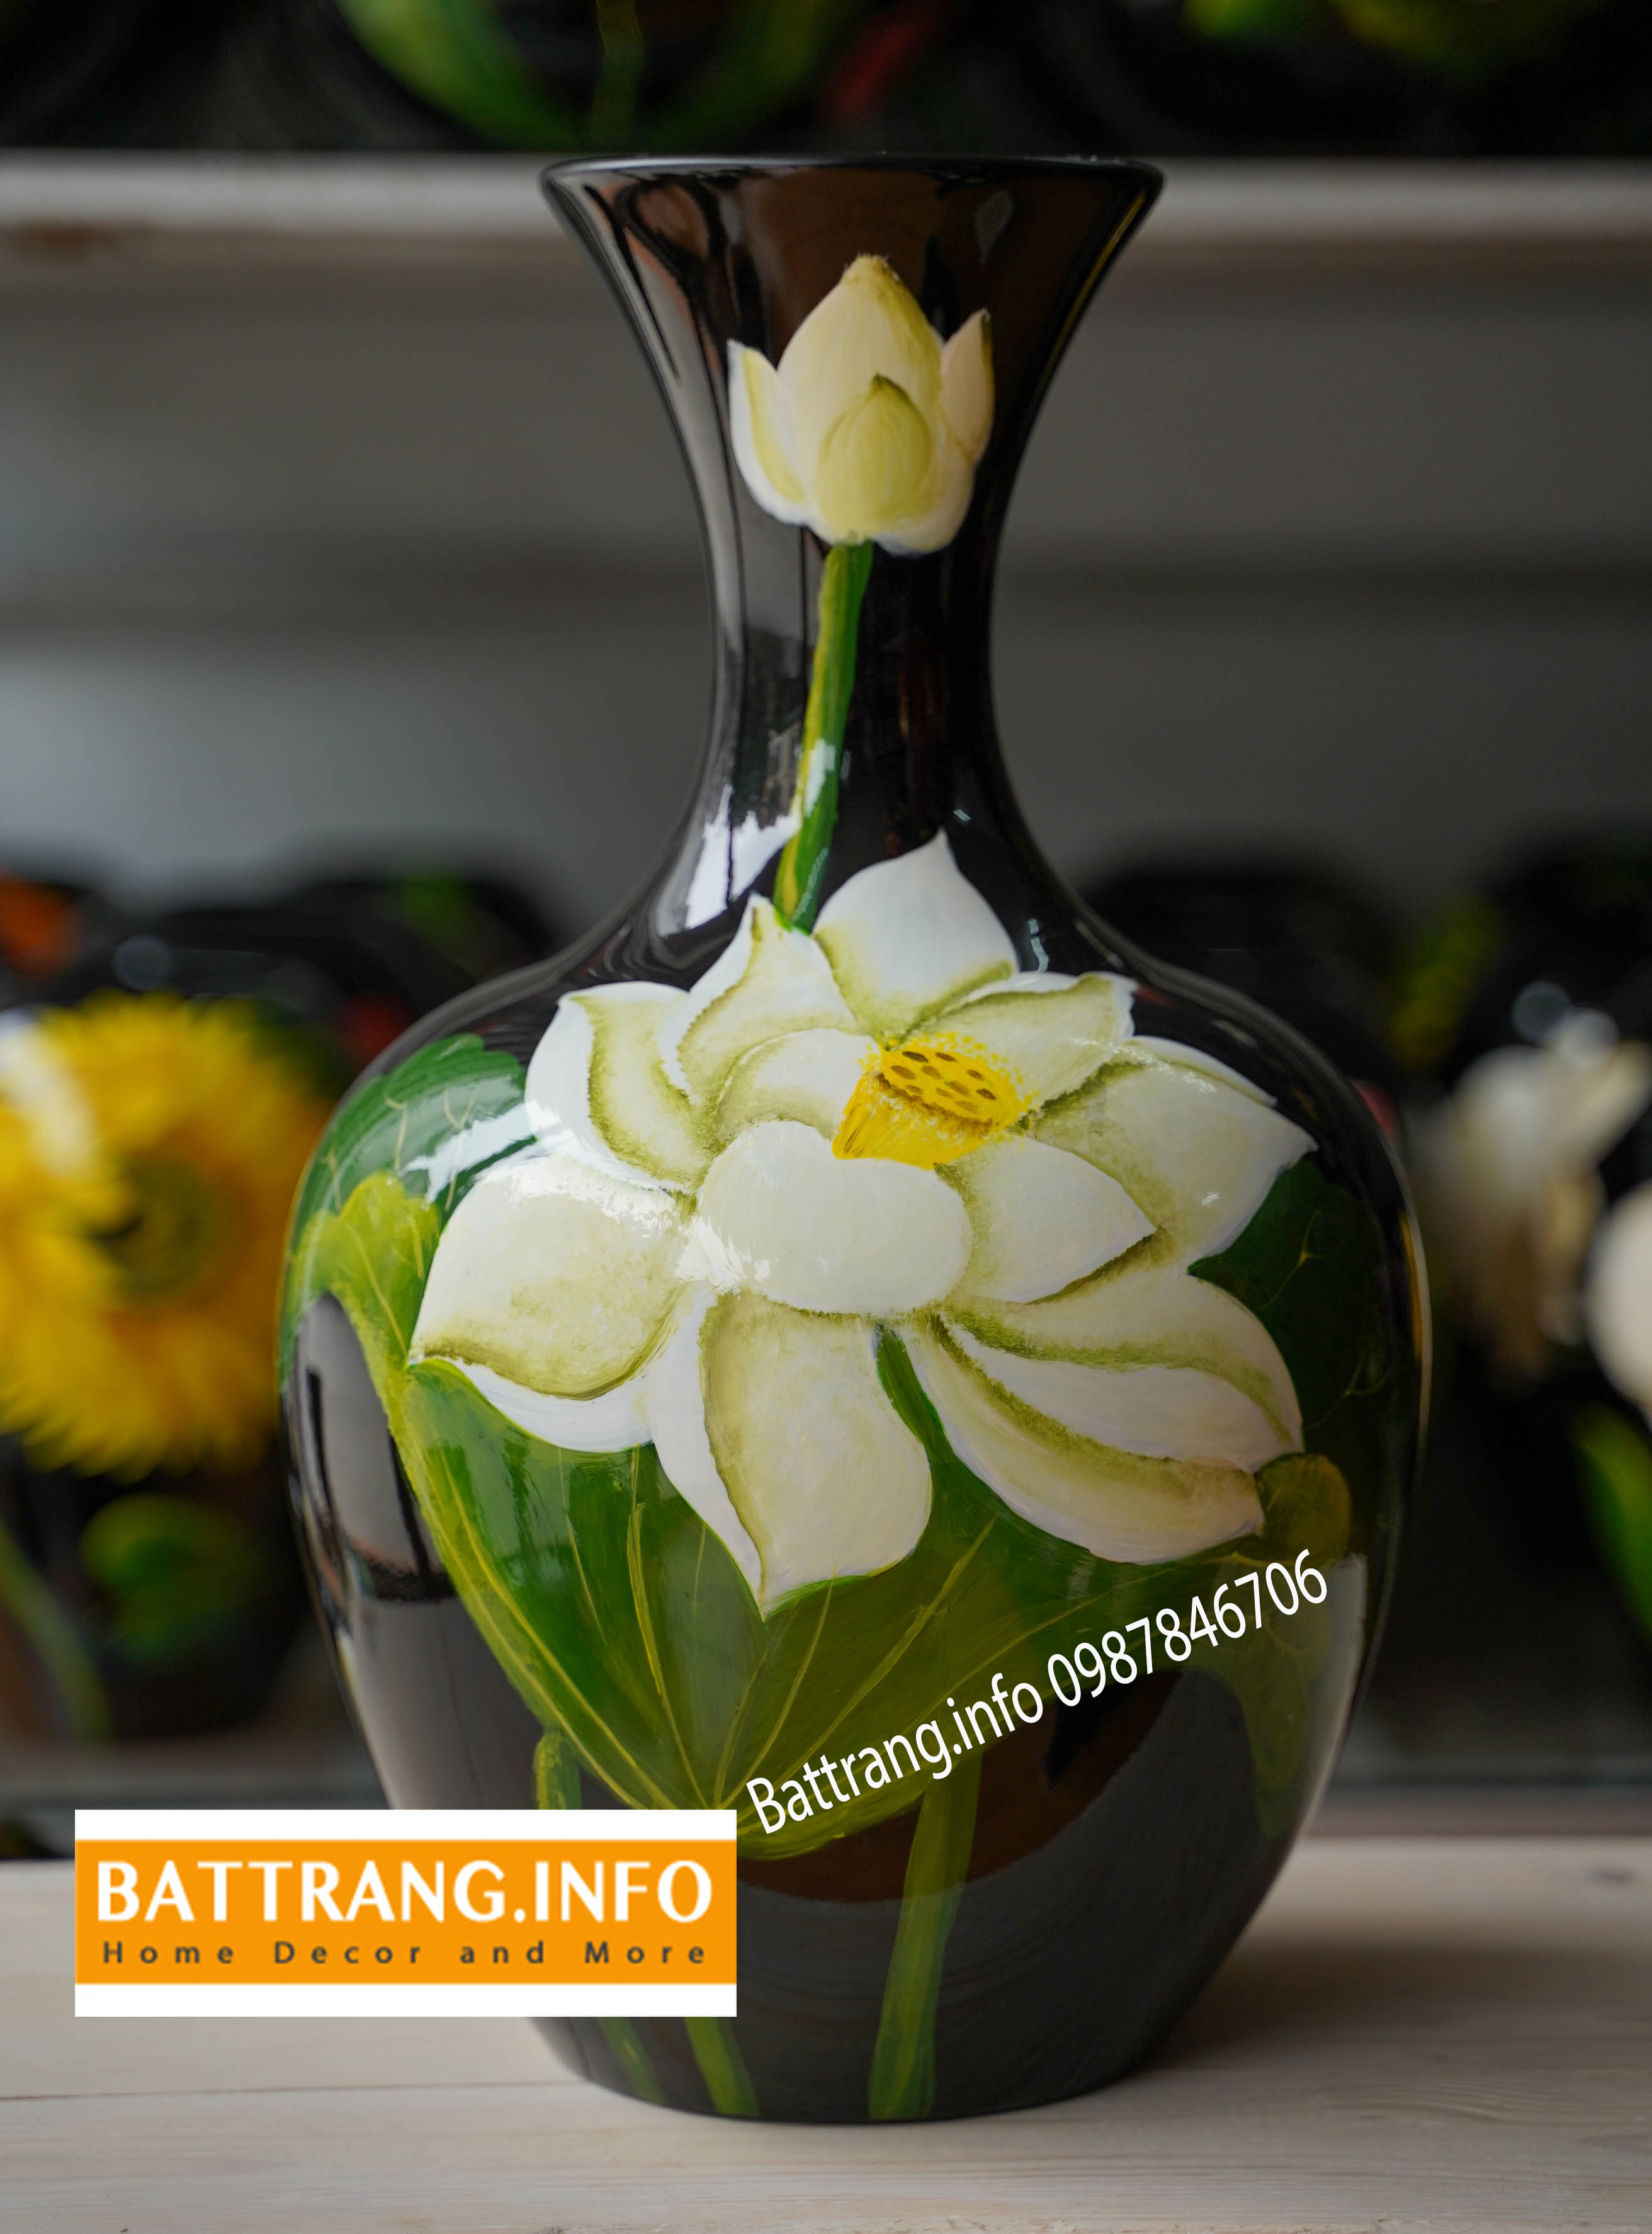 Sơn mài 3D và vẽ hoa sen Bát Tràng đã từ lâu trở thành một biểu tượng văn hóa đặc trưng của Việt Nam. Hình ảnh liên quan đến từ khóa này sẽ mang đến cho bạn những tác phẩm sơn mài 3D và vẽ hoa sen Bát Tràng độc đáo, sang trọng và tinh tế. Không chỉ đẹp mắt mà còn giữ được giá trị văn hóa và mang đậm chất dân tộc.